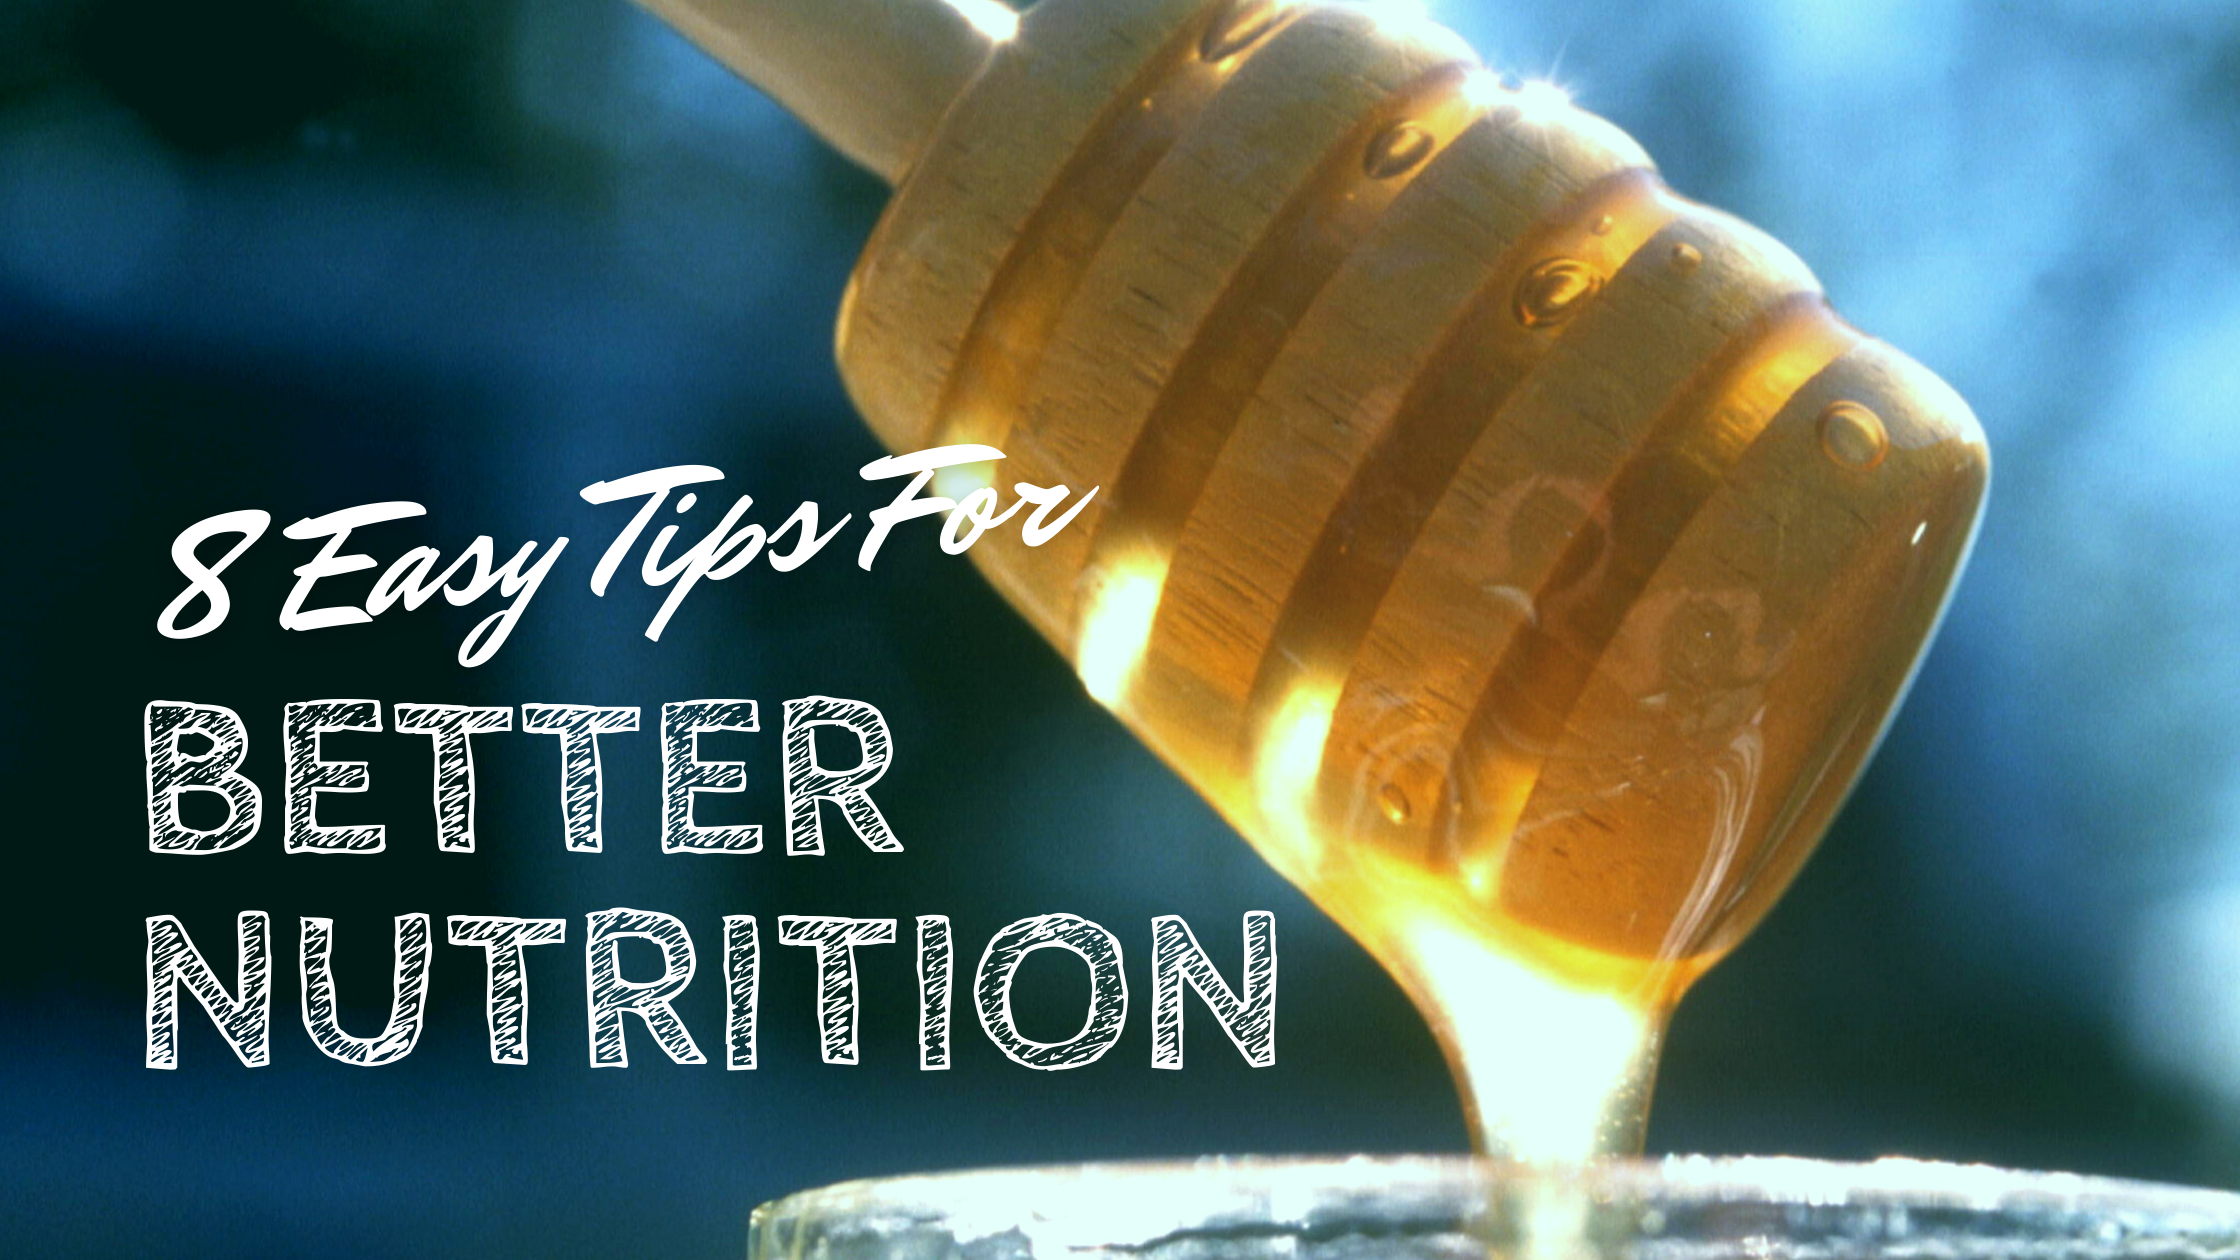 8 Easy Tips for Better Nutrition